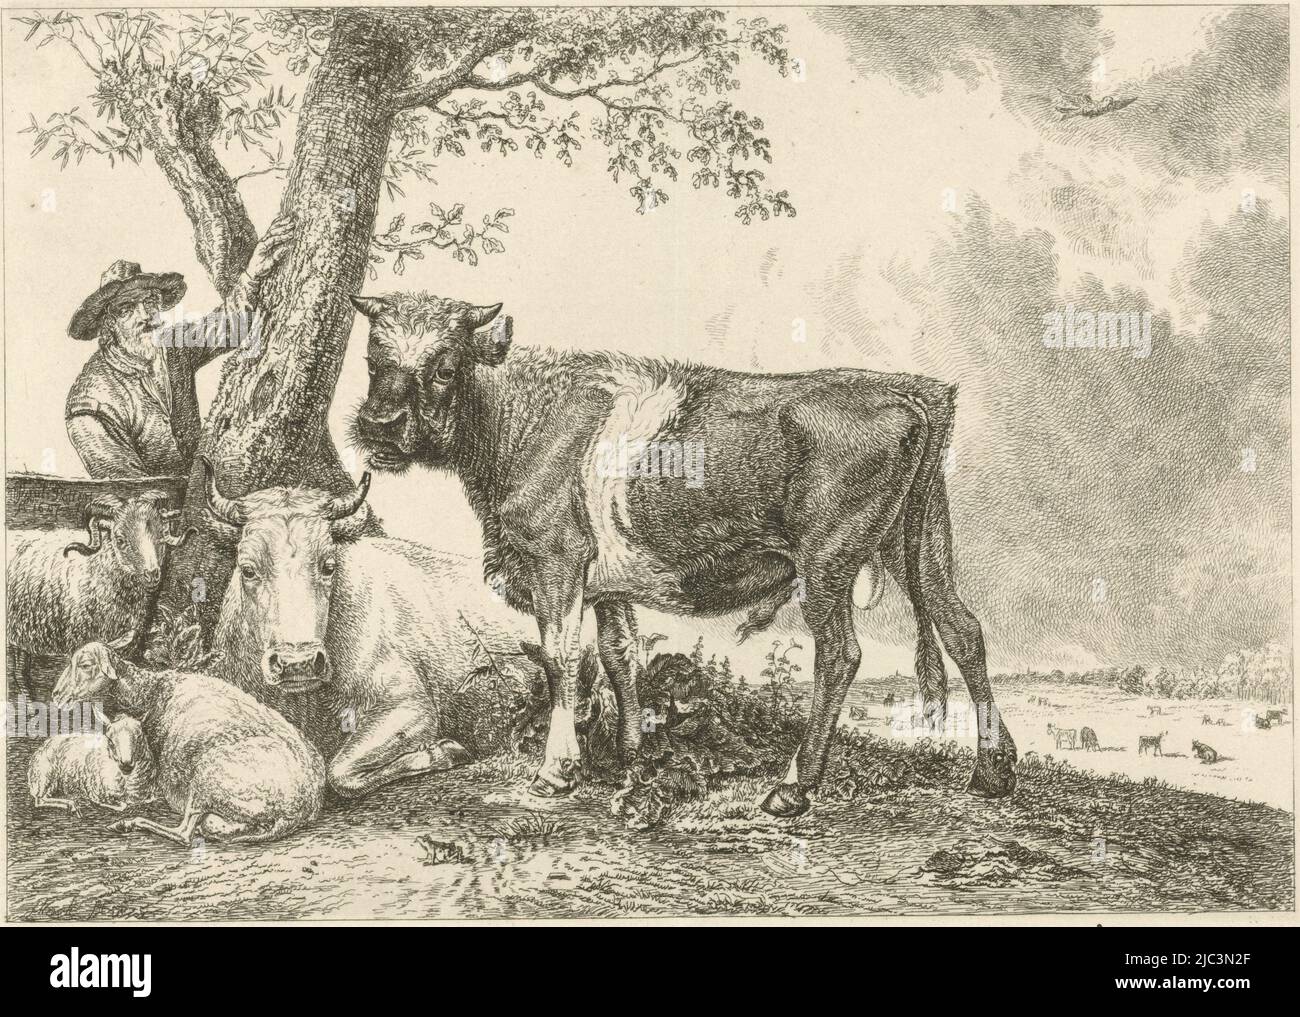 Un taureau se tient près d'un arbre. A gauche un fermier avec des moutons et une vache, Bull et fermier, imprimeur: Johannes Mock, (mentionné sur l'objet), après: Paulus Potter, pays-Bas, 1825, papier, gravure, h 191 mm × l 152 mm Banque D'Images